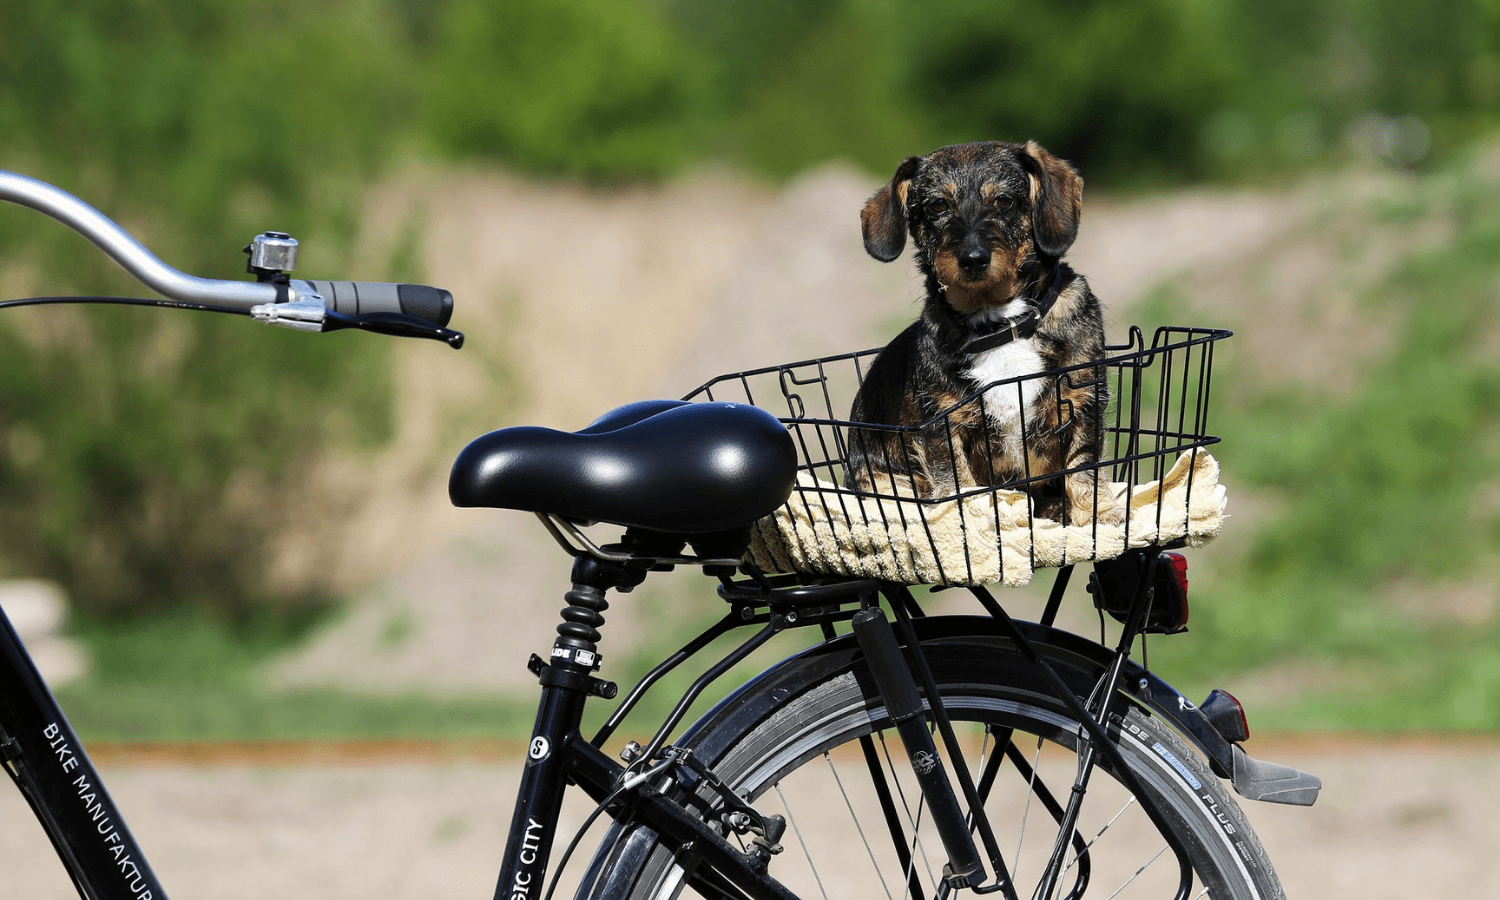 Zu einem nachhaltigen Hundealltag gehört auch der Transport: Statt Auto sollte man mal das Fahrrad nehmen. Kleine Hunde können dabei in einem Fahrradkorb transportiert werden. © Allen Barkly